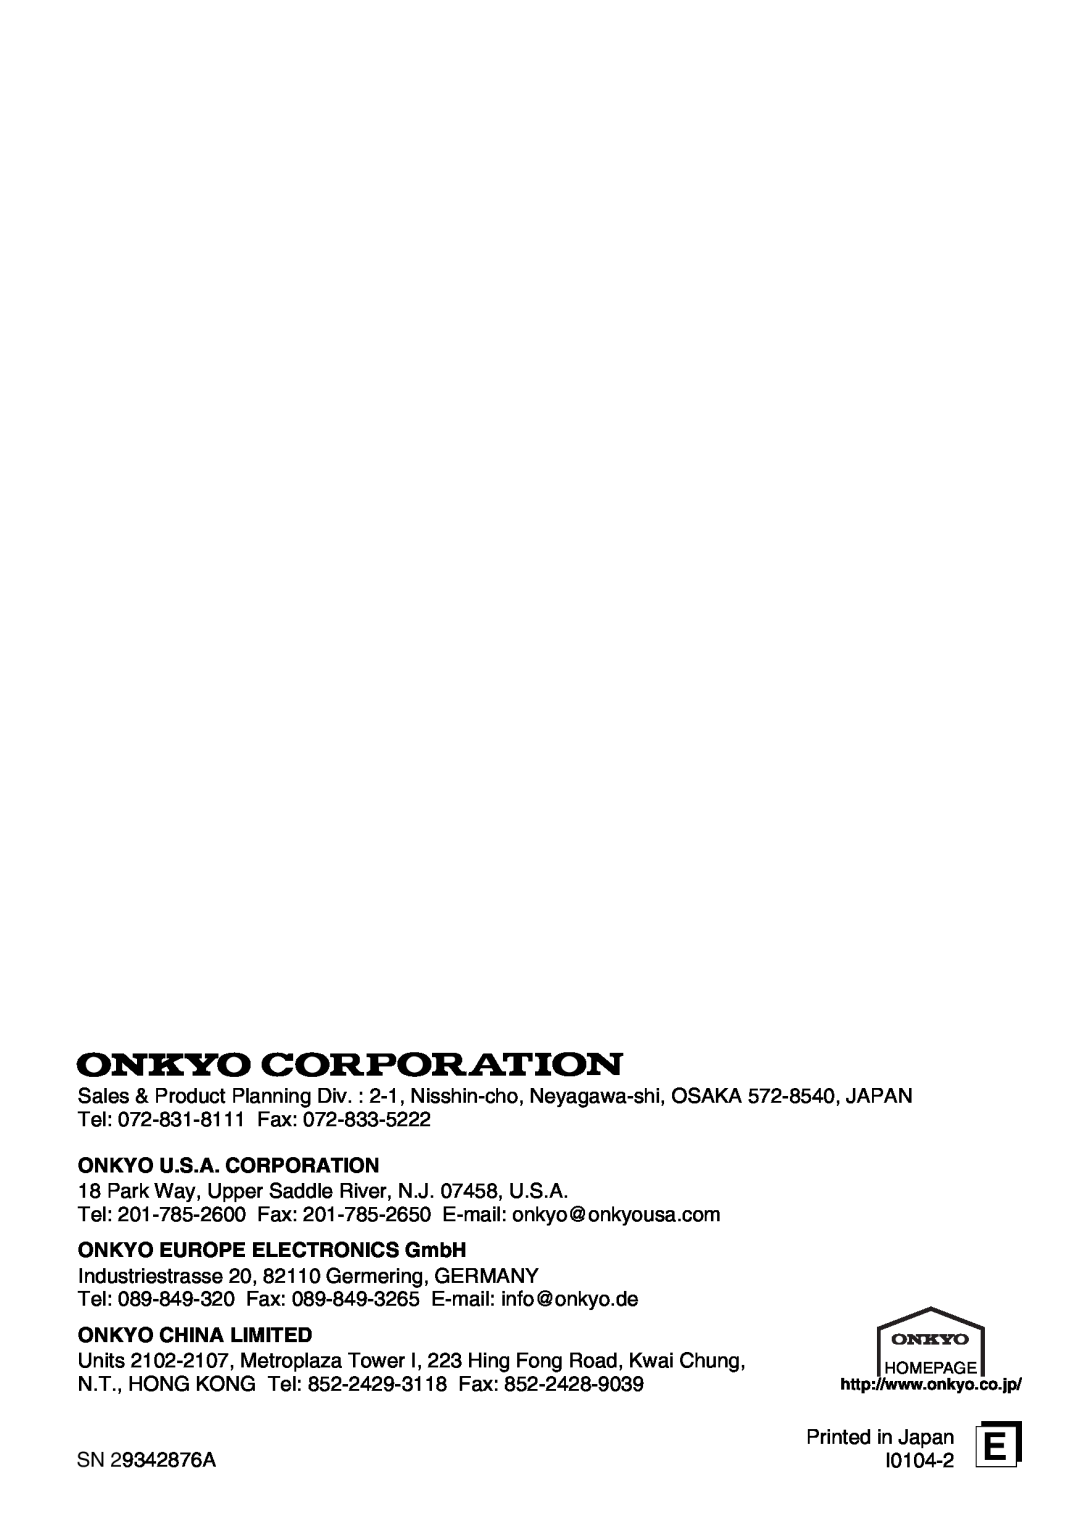 Onkyo C-707CHX instruction manual Onkyo U.S.A. Corporation, ONKYO EUROPE ELECTRONICS GmbH, Onkyo China Limited 